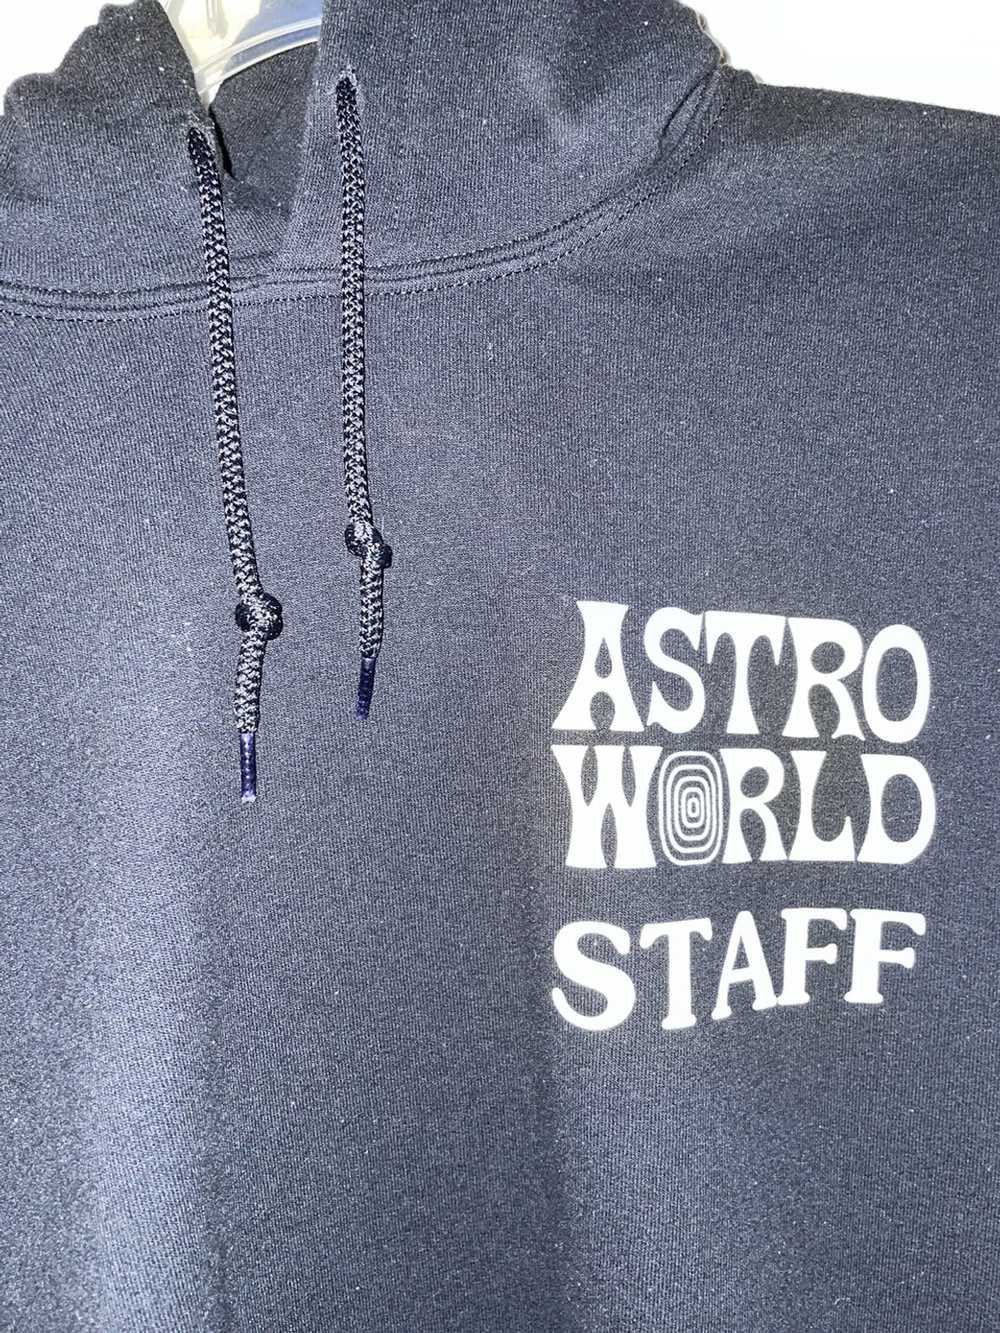 Travis Scott Astro World Staff Merch - image 4